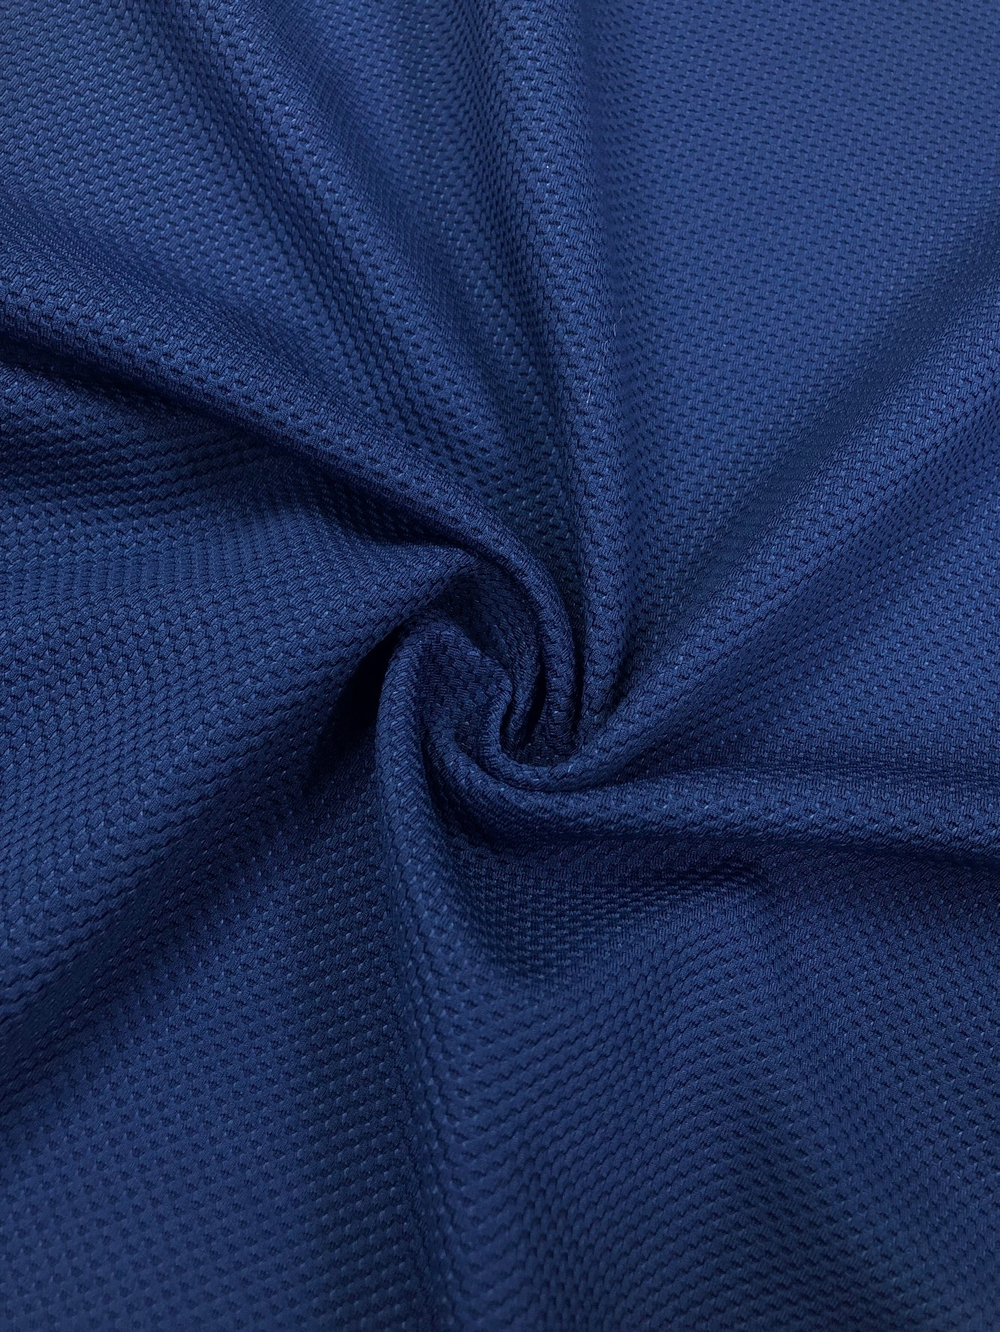 Ткань трикотаж Лакоста крупная, цв. Темно-синий арт. 327010